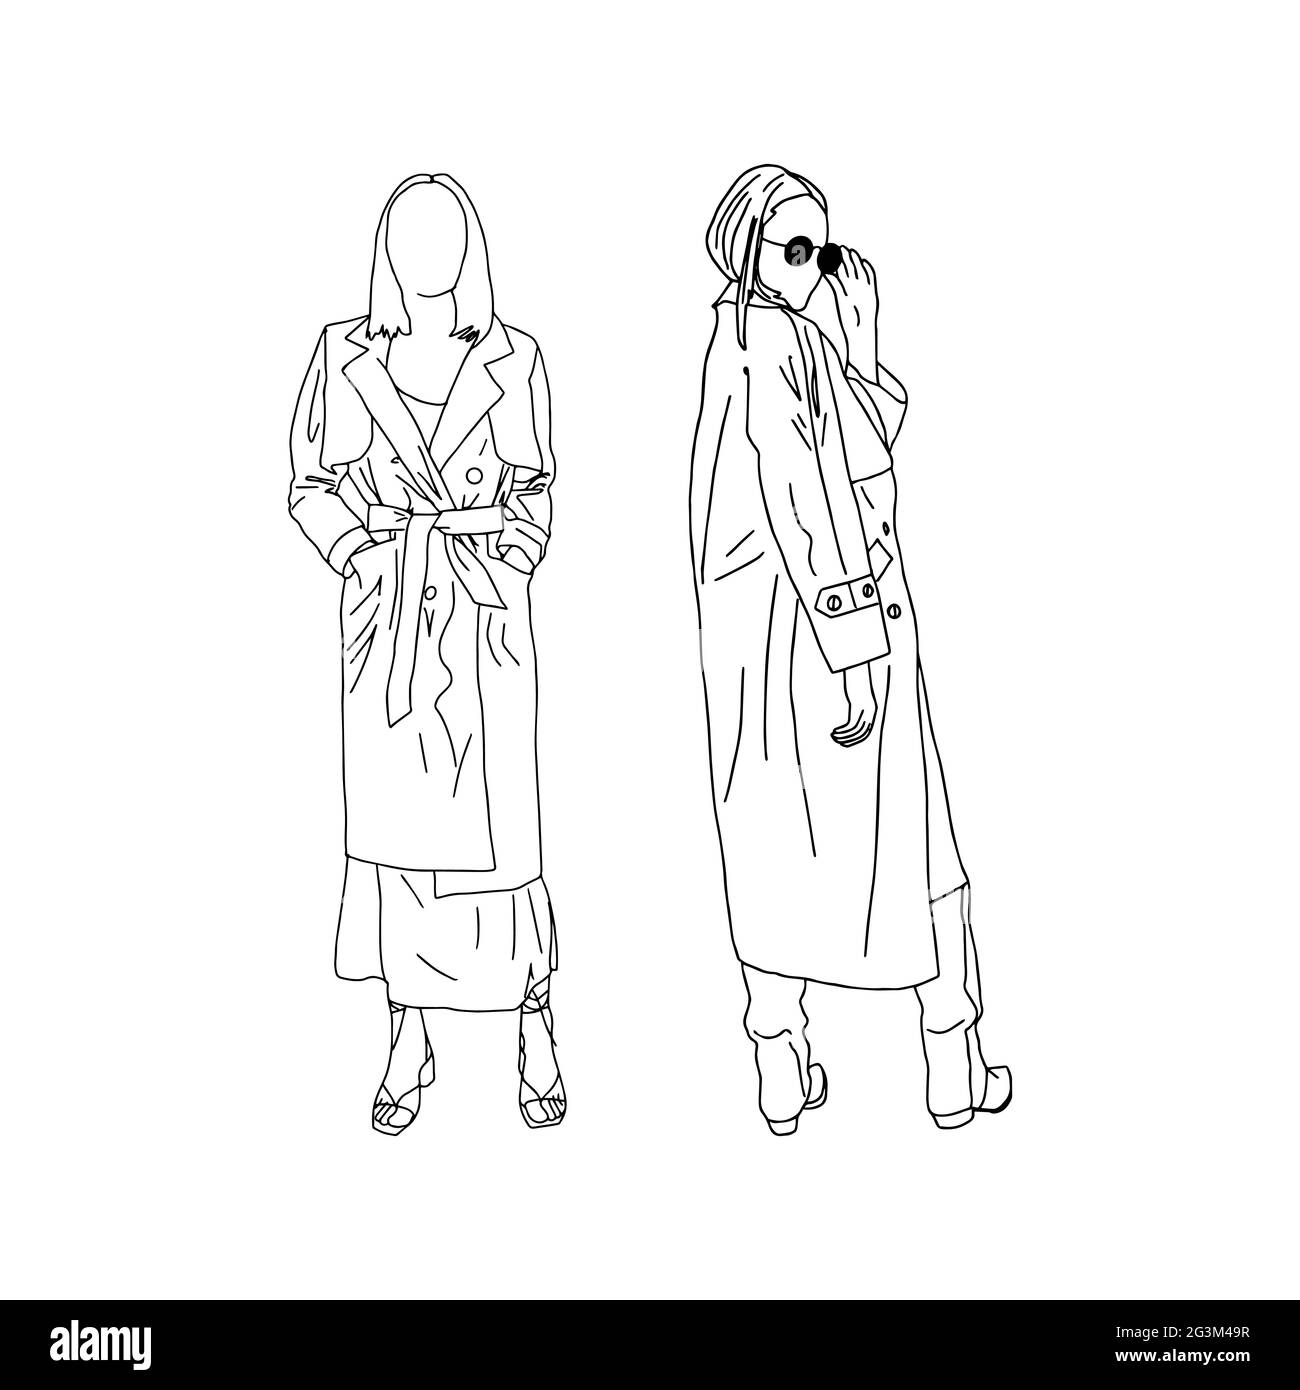 Junge Mädchen posieren in trendigen Trenchcoats, in einem linearen Stil gezeichnet. Vektorgrafik. Stock Vektor